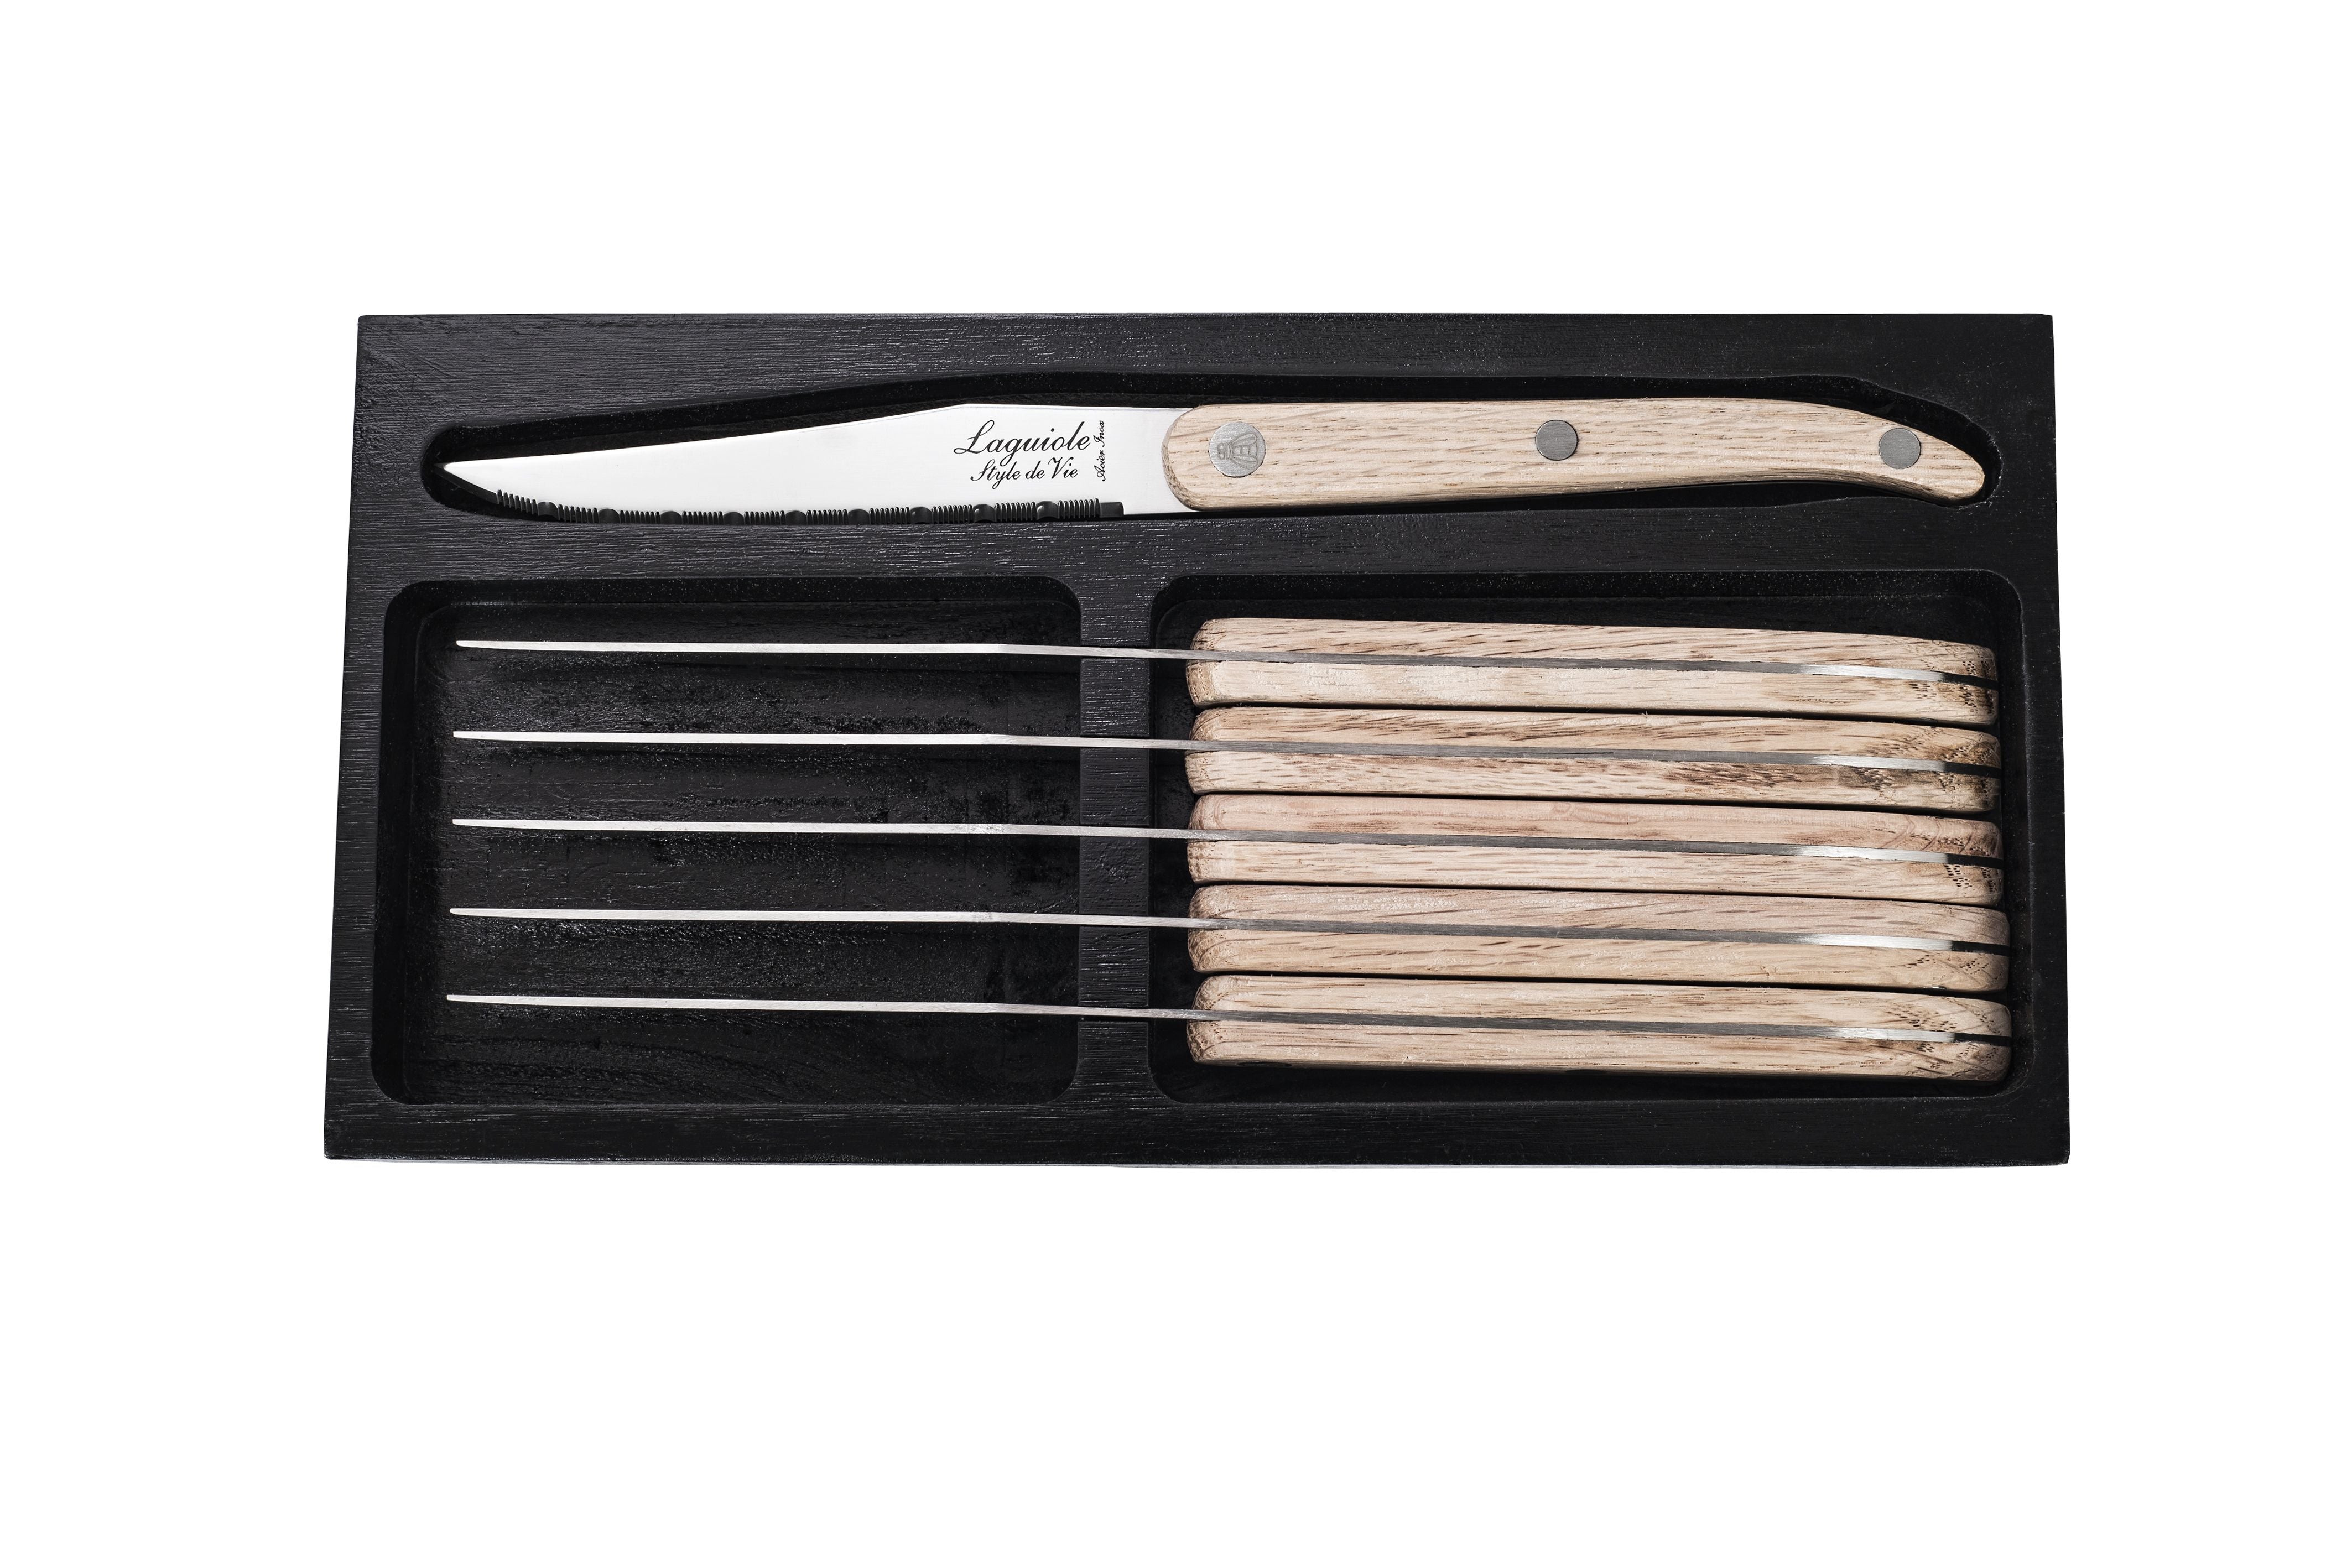 Stil de vie authentique laguiole Innovationslinie Steakmesser 6 Stück Set Eiche Holz, gezackte Klinge